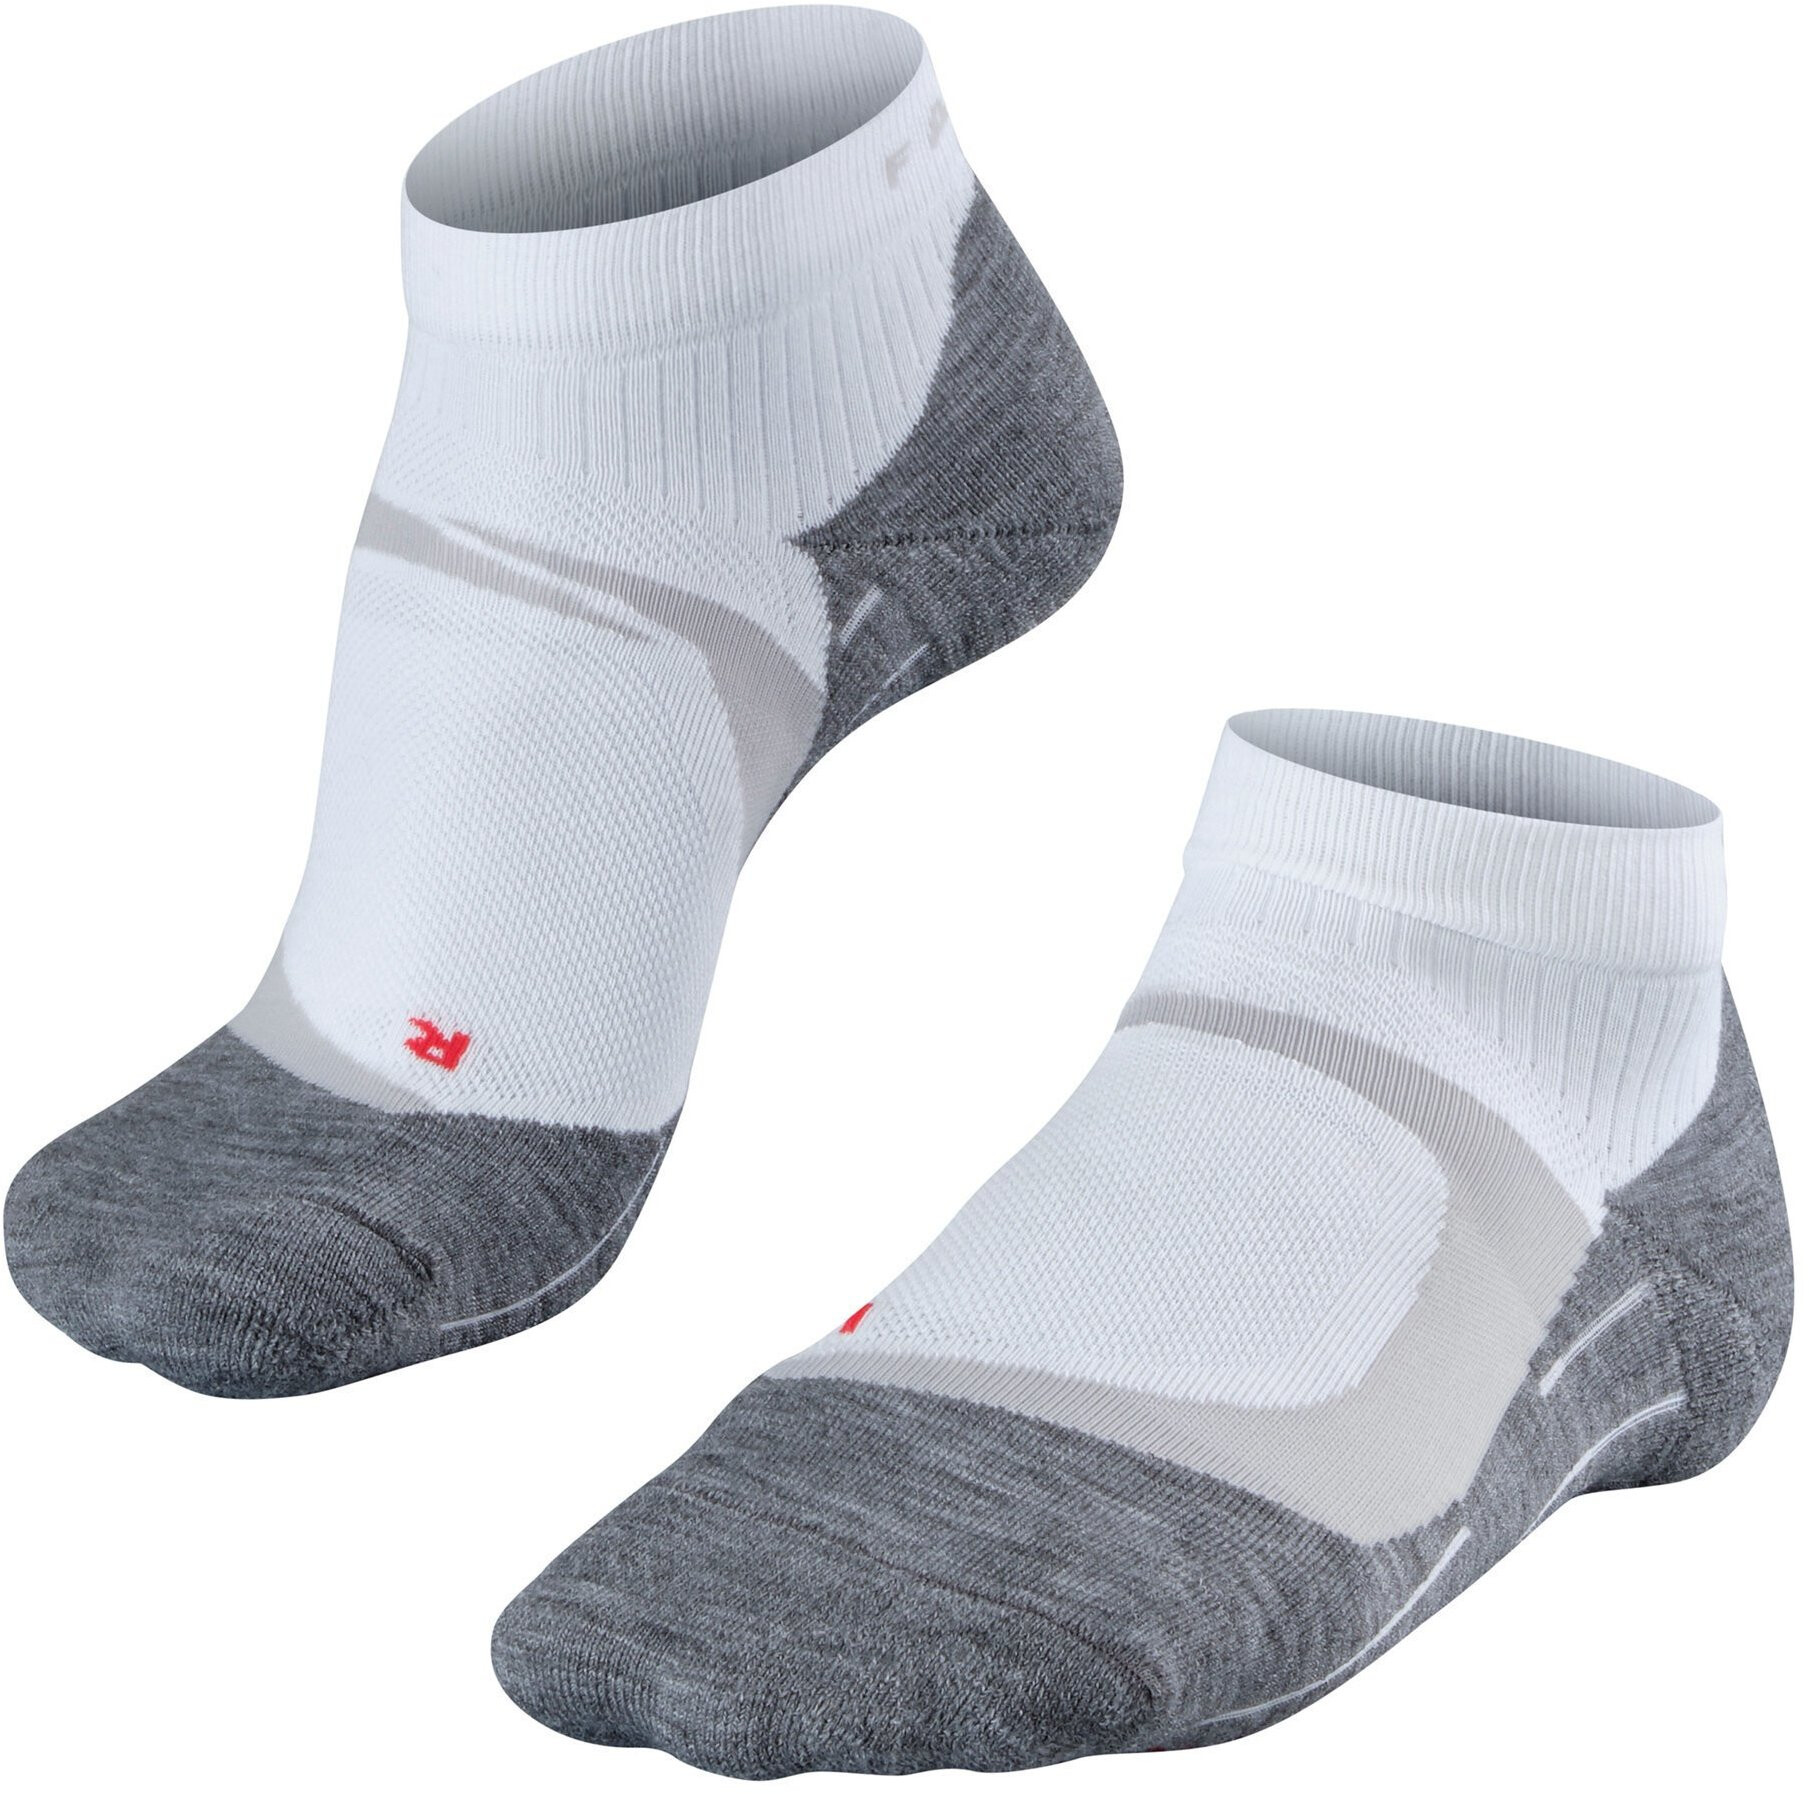 Falke RU 4 Cool Kurze Socken Damen weiß/grau